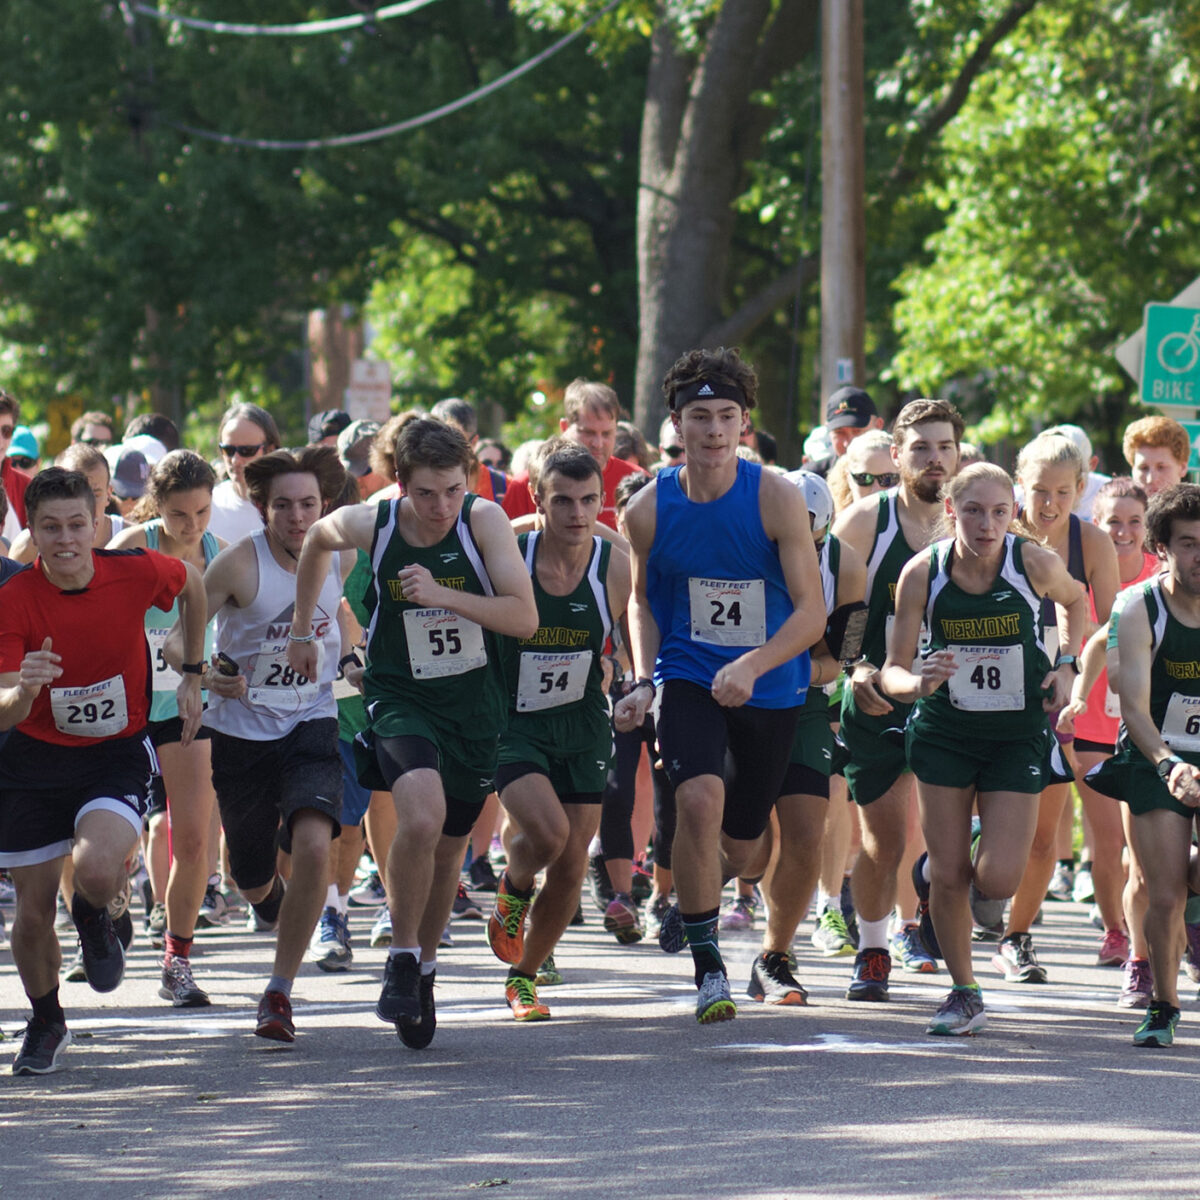 runners begin an outdoor race